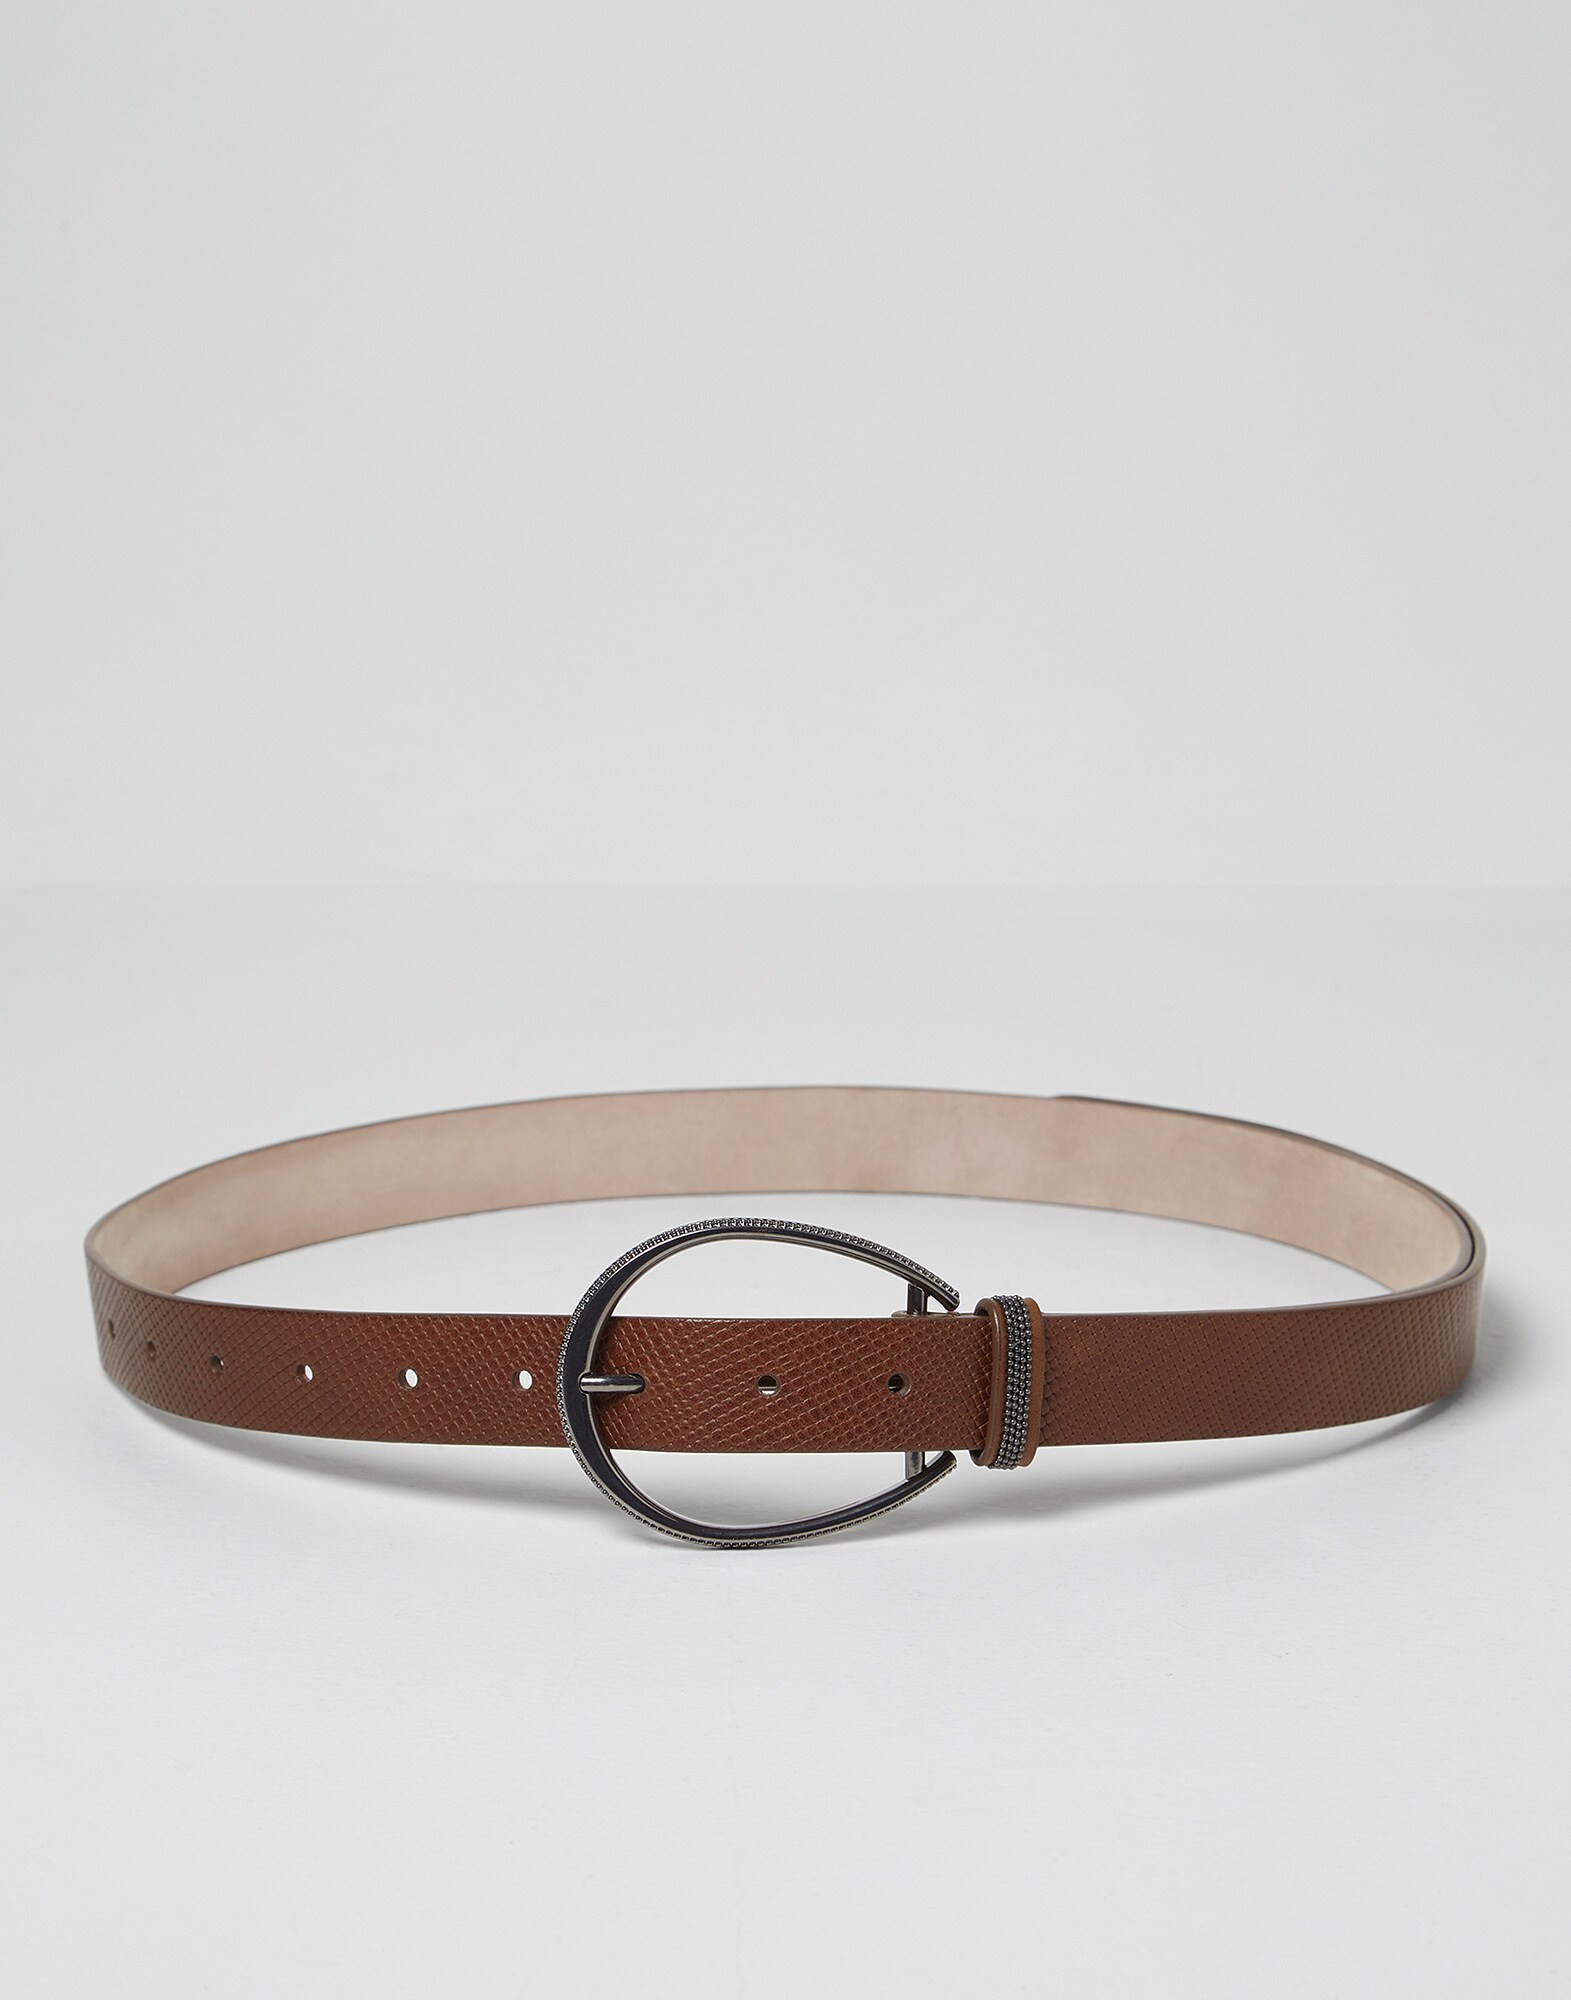 Leather and monili belt